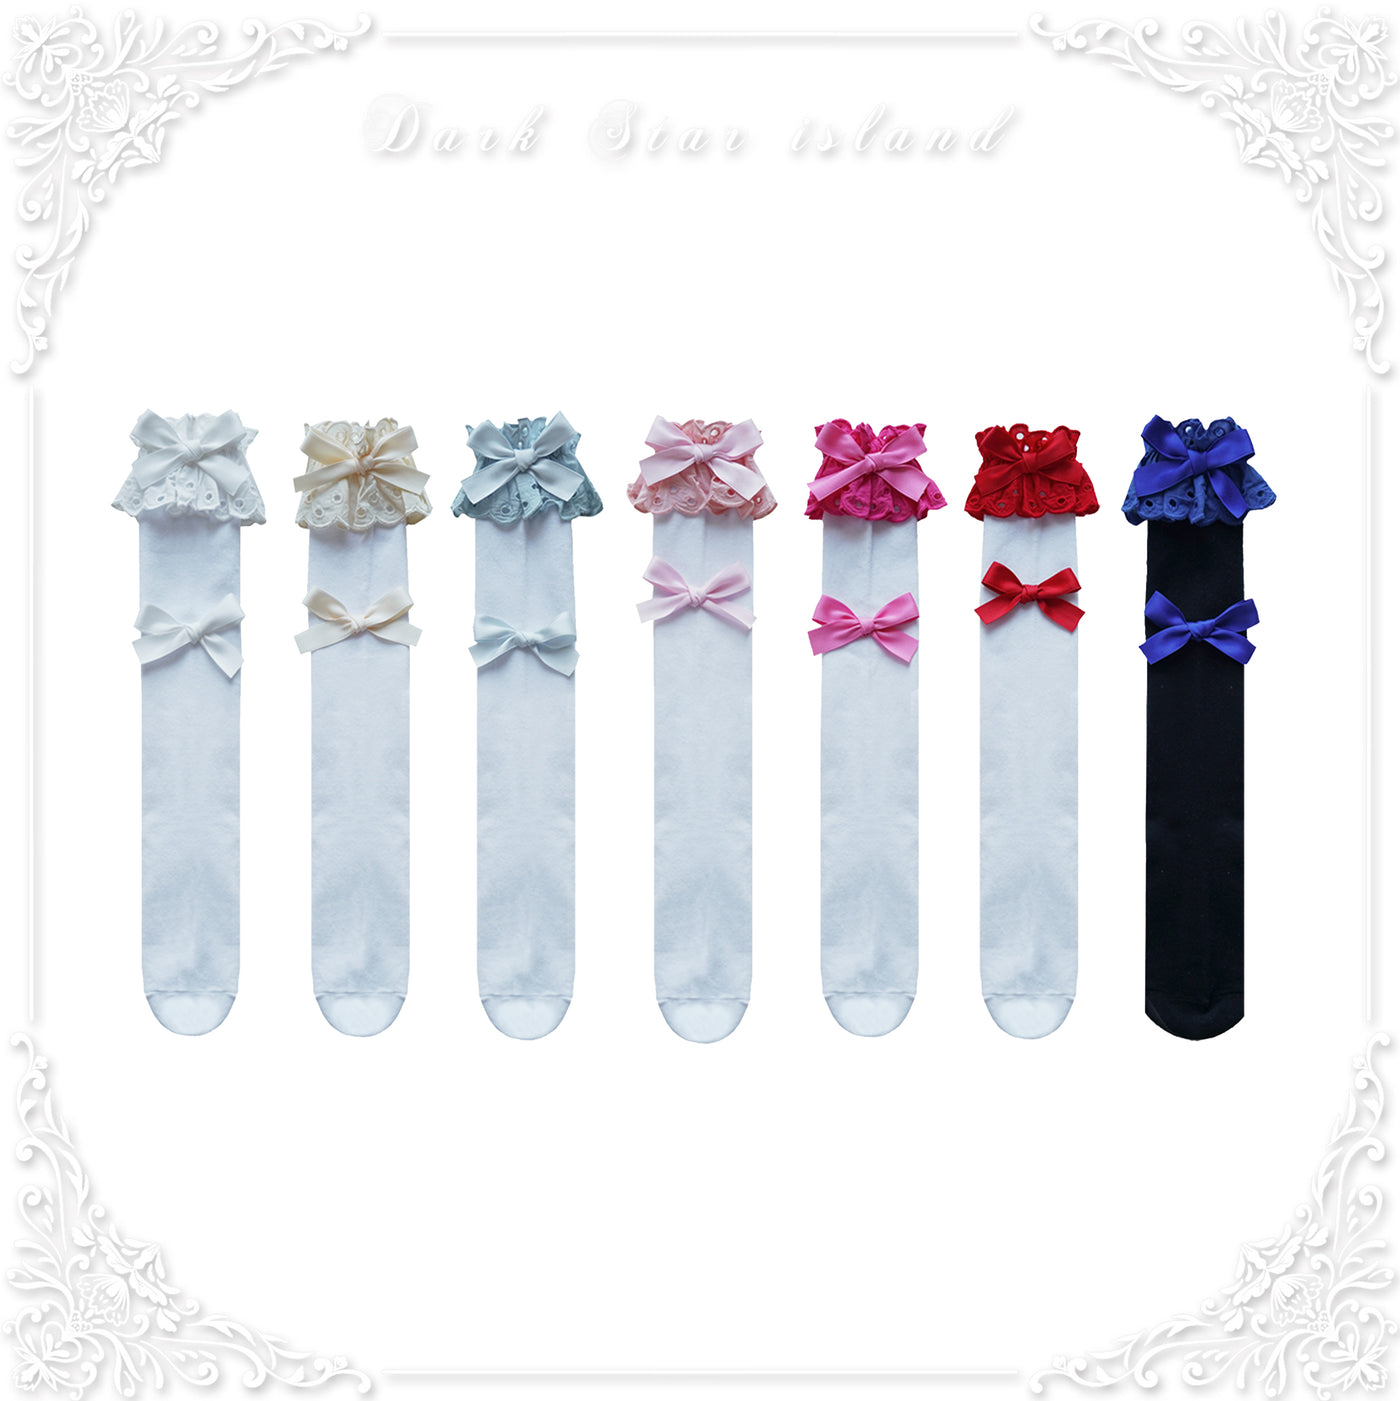 Dark Star Island~Cute Lolita Multi-Color Bow Cotton Socks   